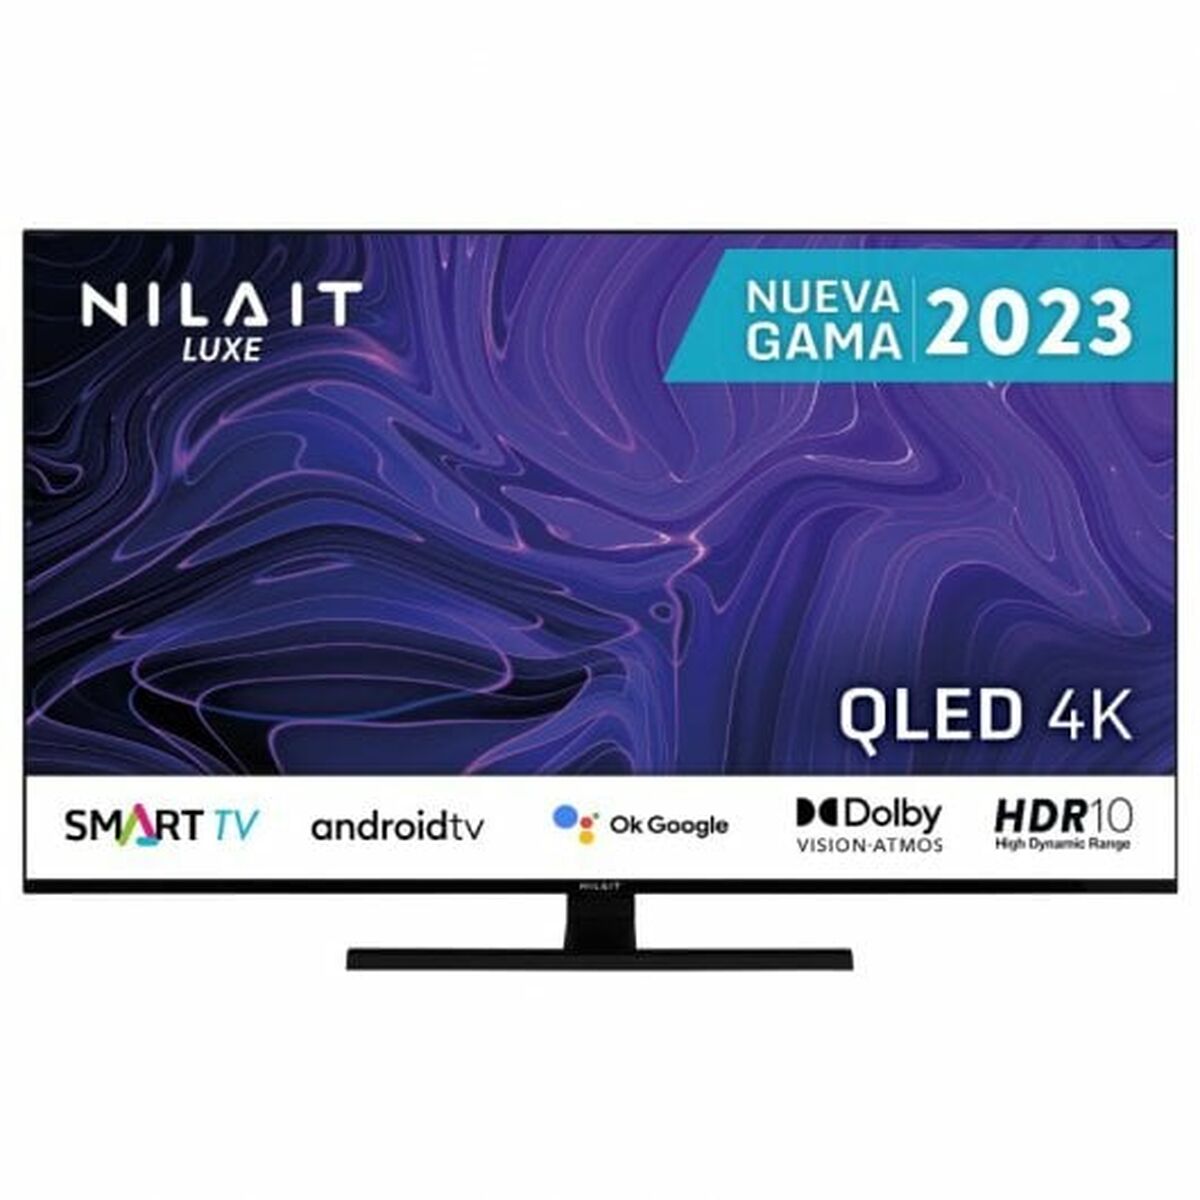 Smart TV Nilait Luxe NI-65UB8002S 4K Ultra HD 65"